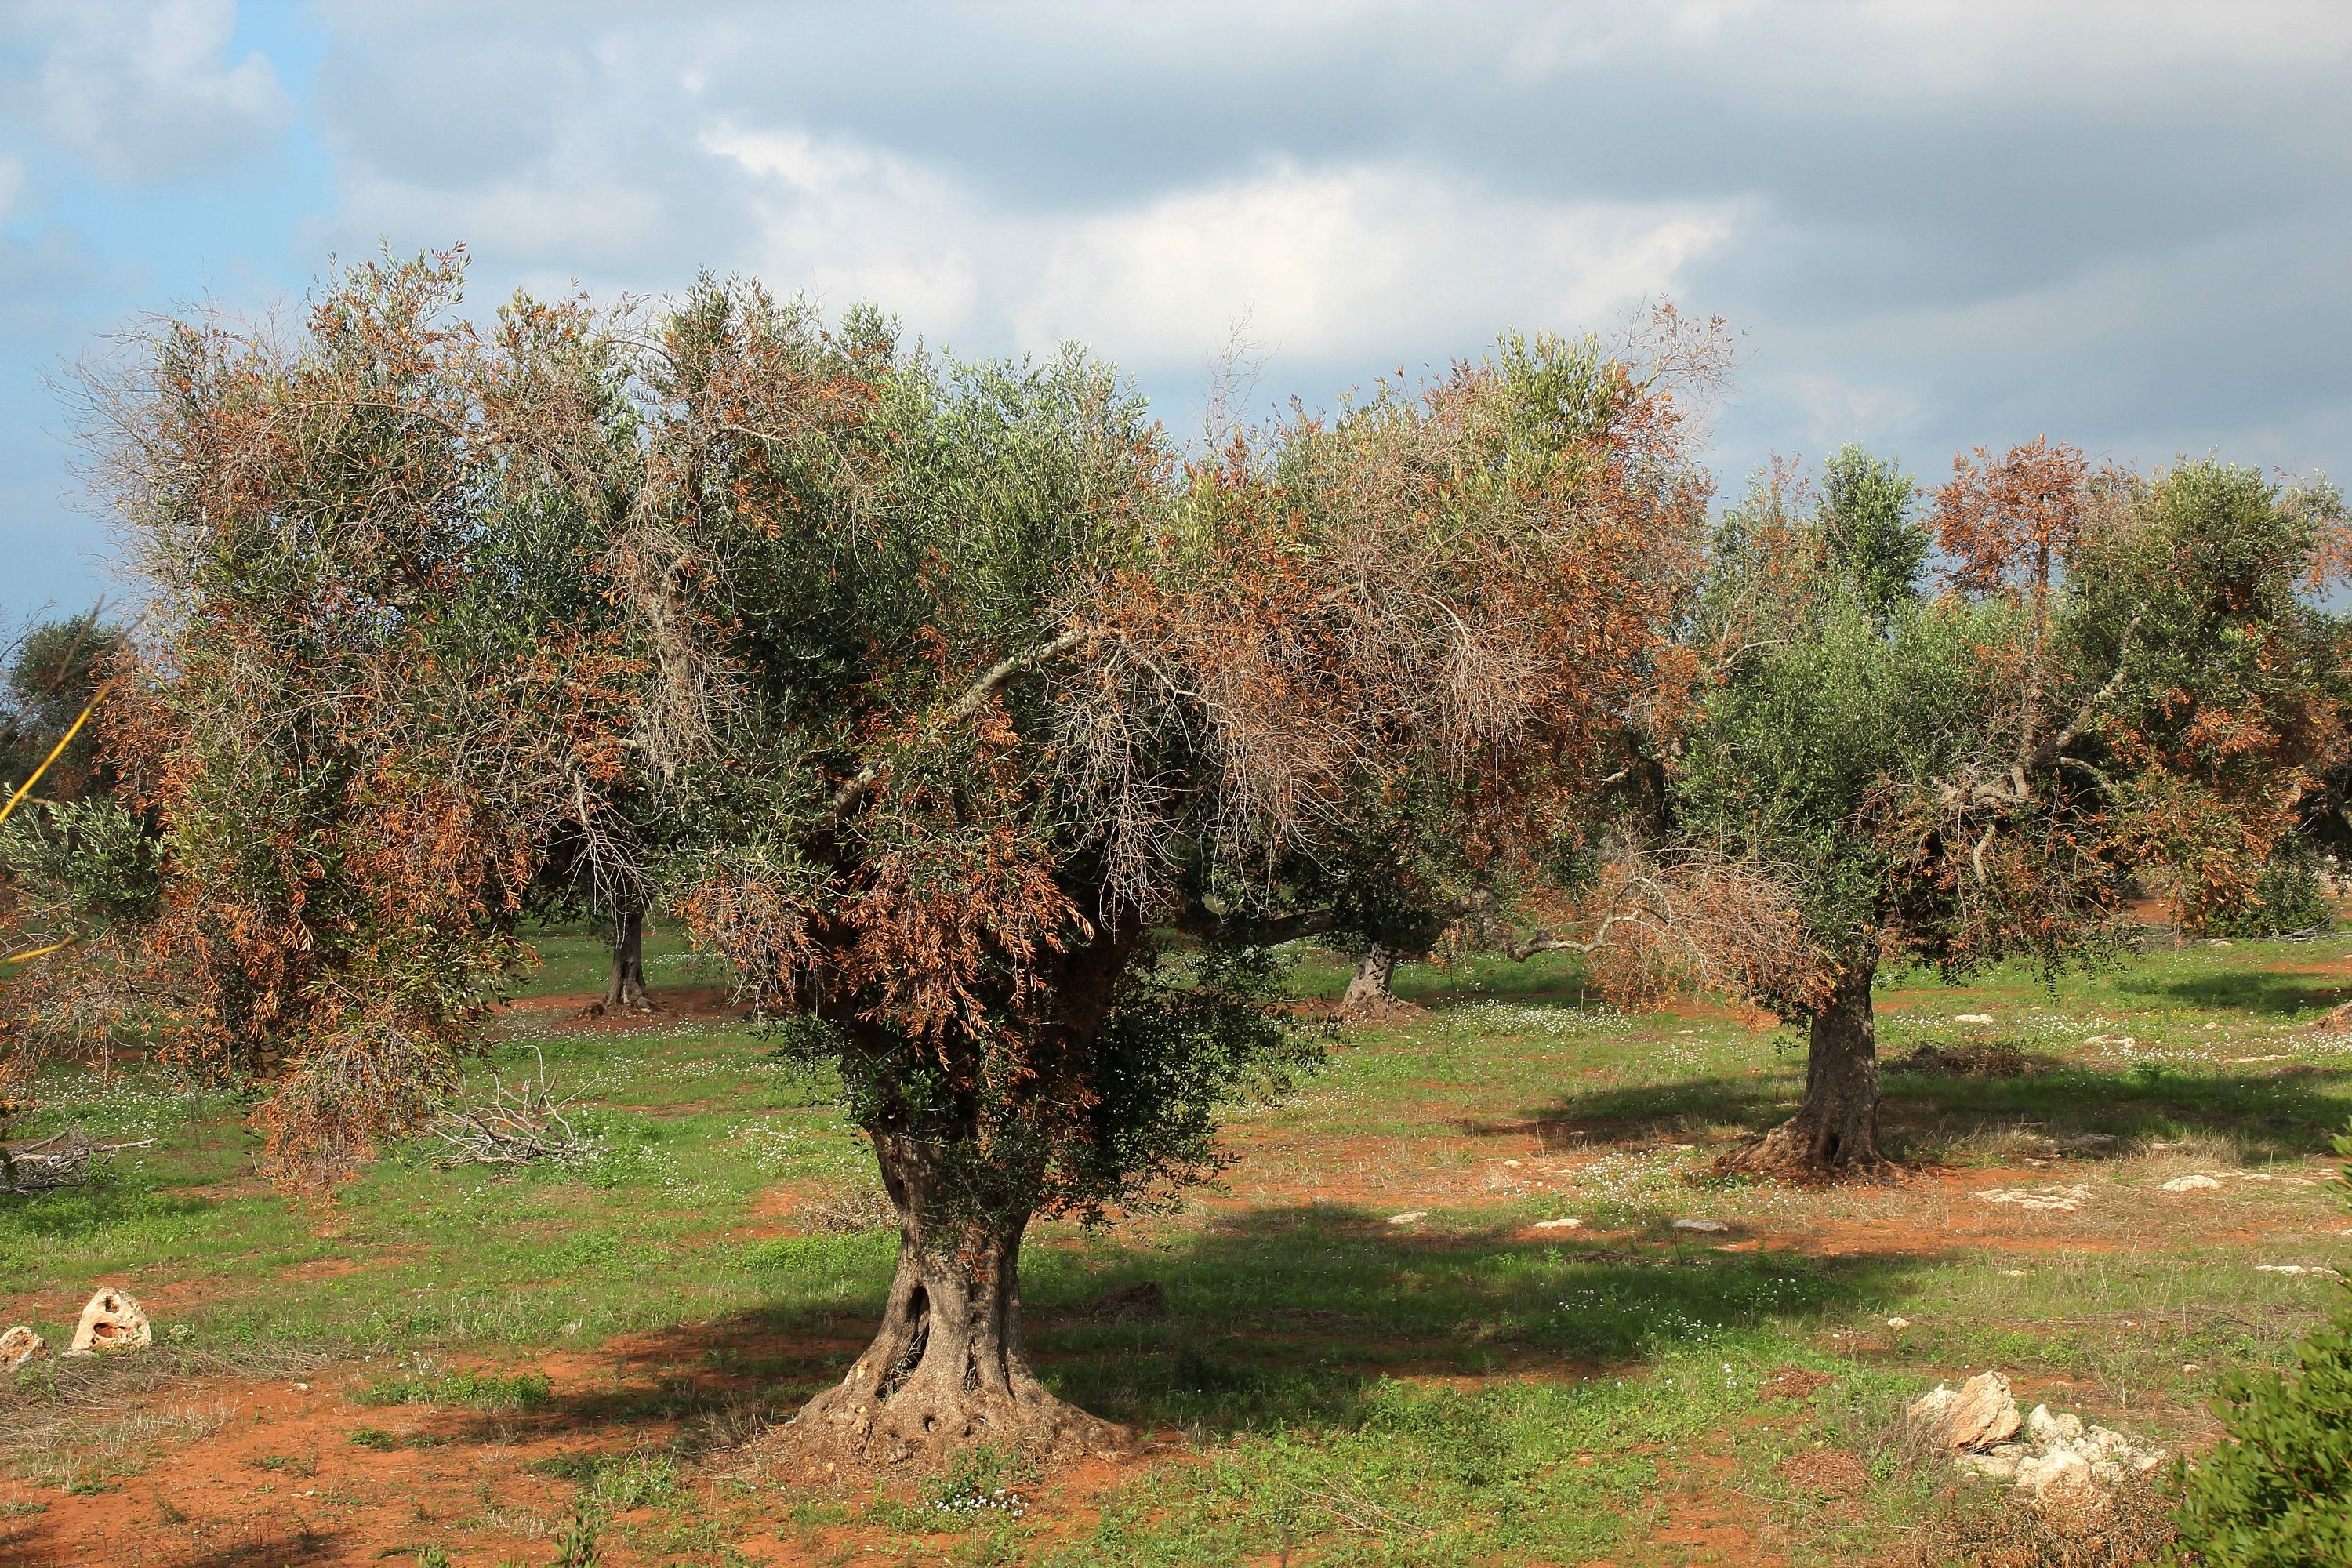  Scoperta un’altra cultivar di olivo resistente alla Xylella